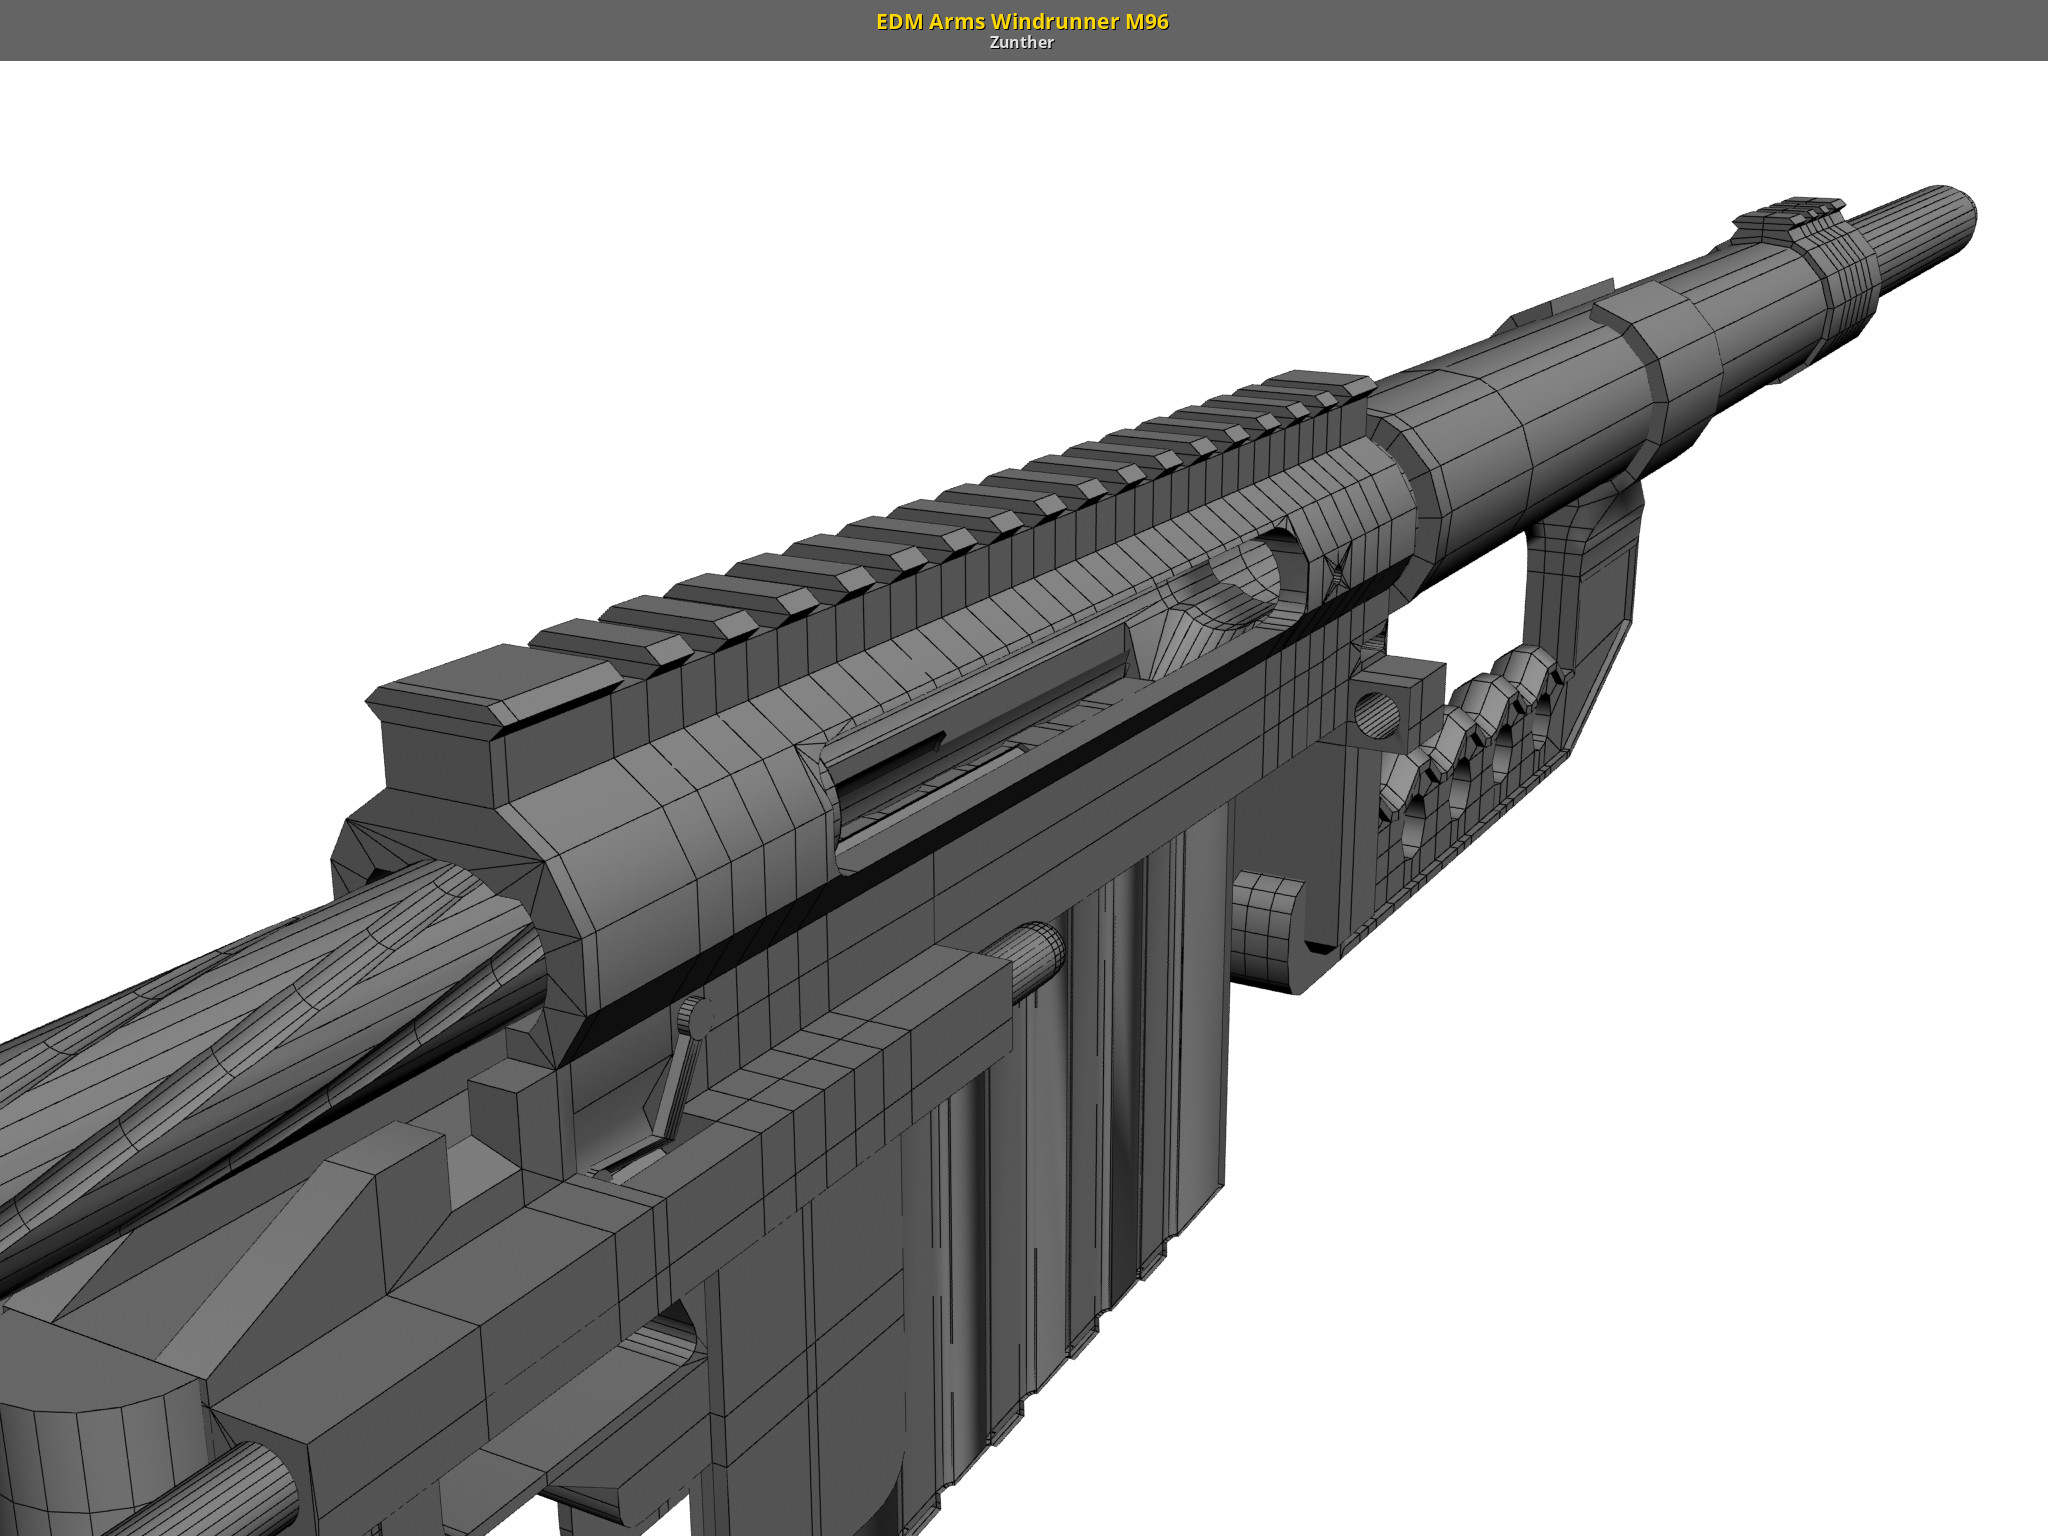 EDM Arms Windrunner M96 GameBanana Works In Progress.